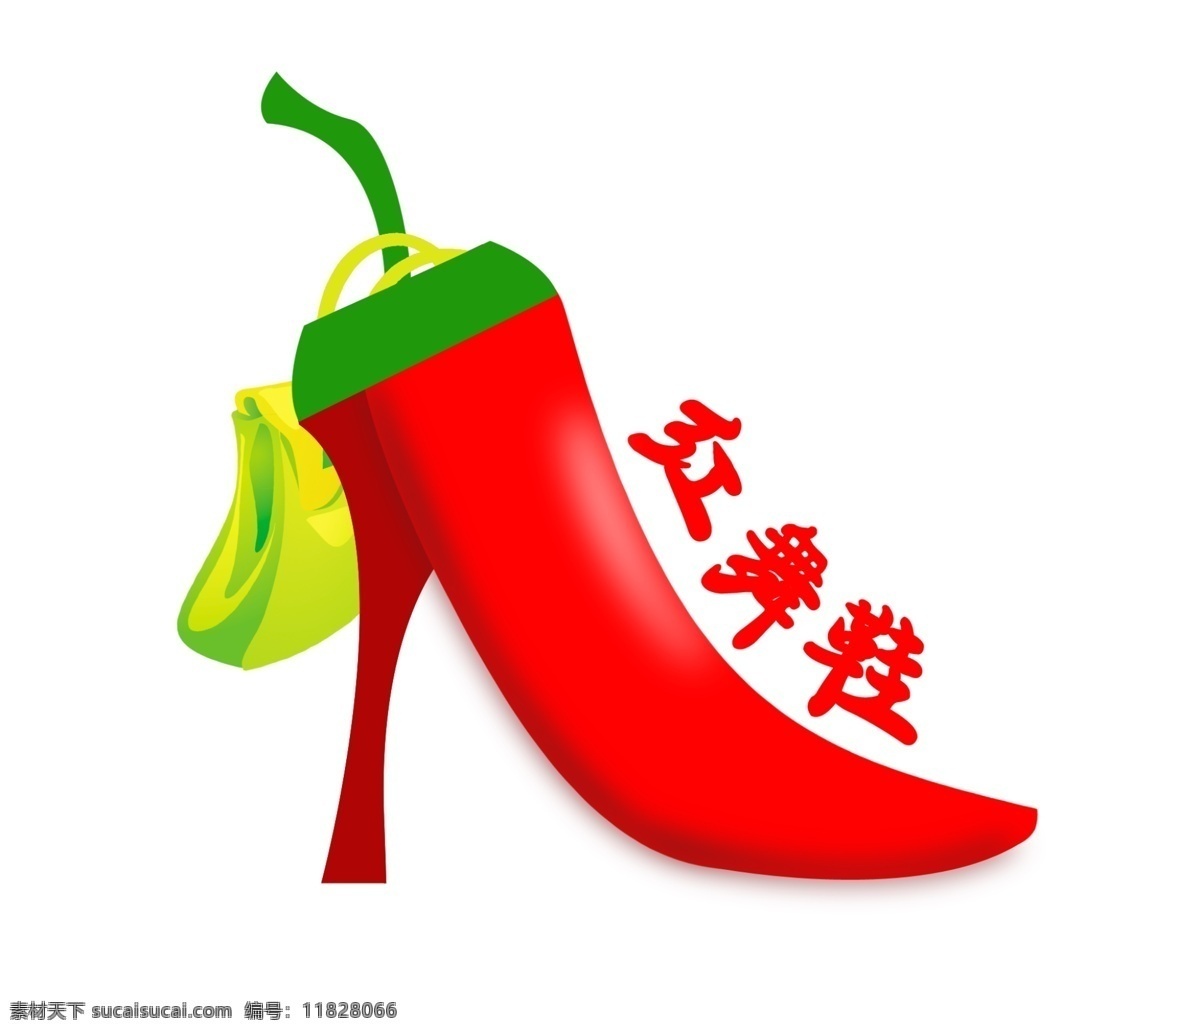 红 舞鞋 logo 鞋子logo 鞋子 辣椒 购物袋 红舞鞋 标志设计 广告设计模板 源文件